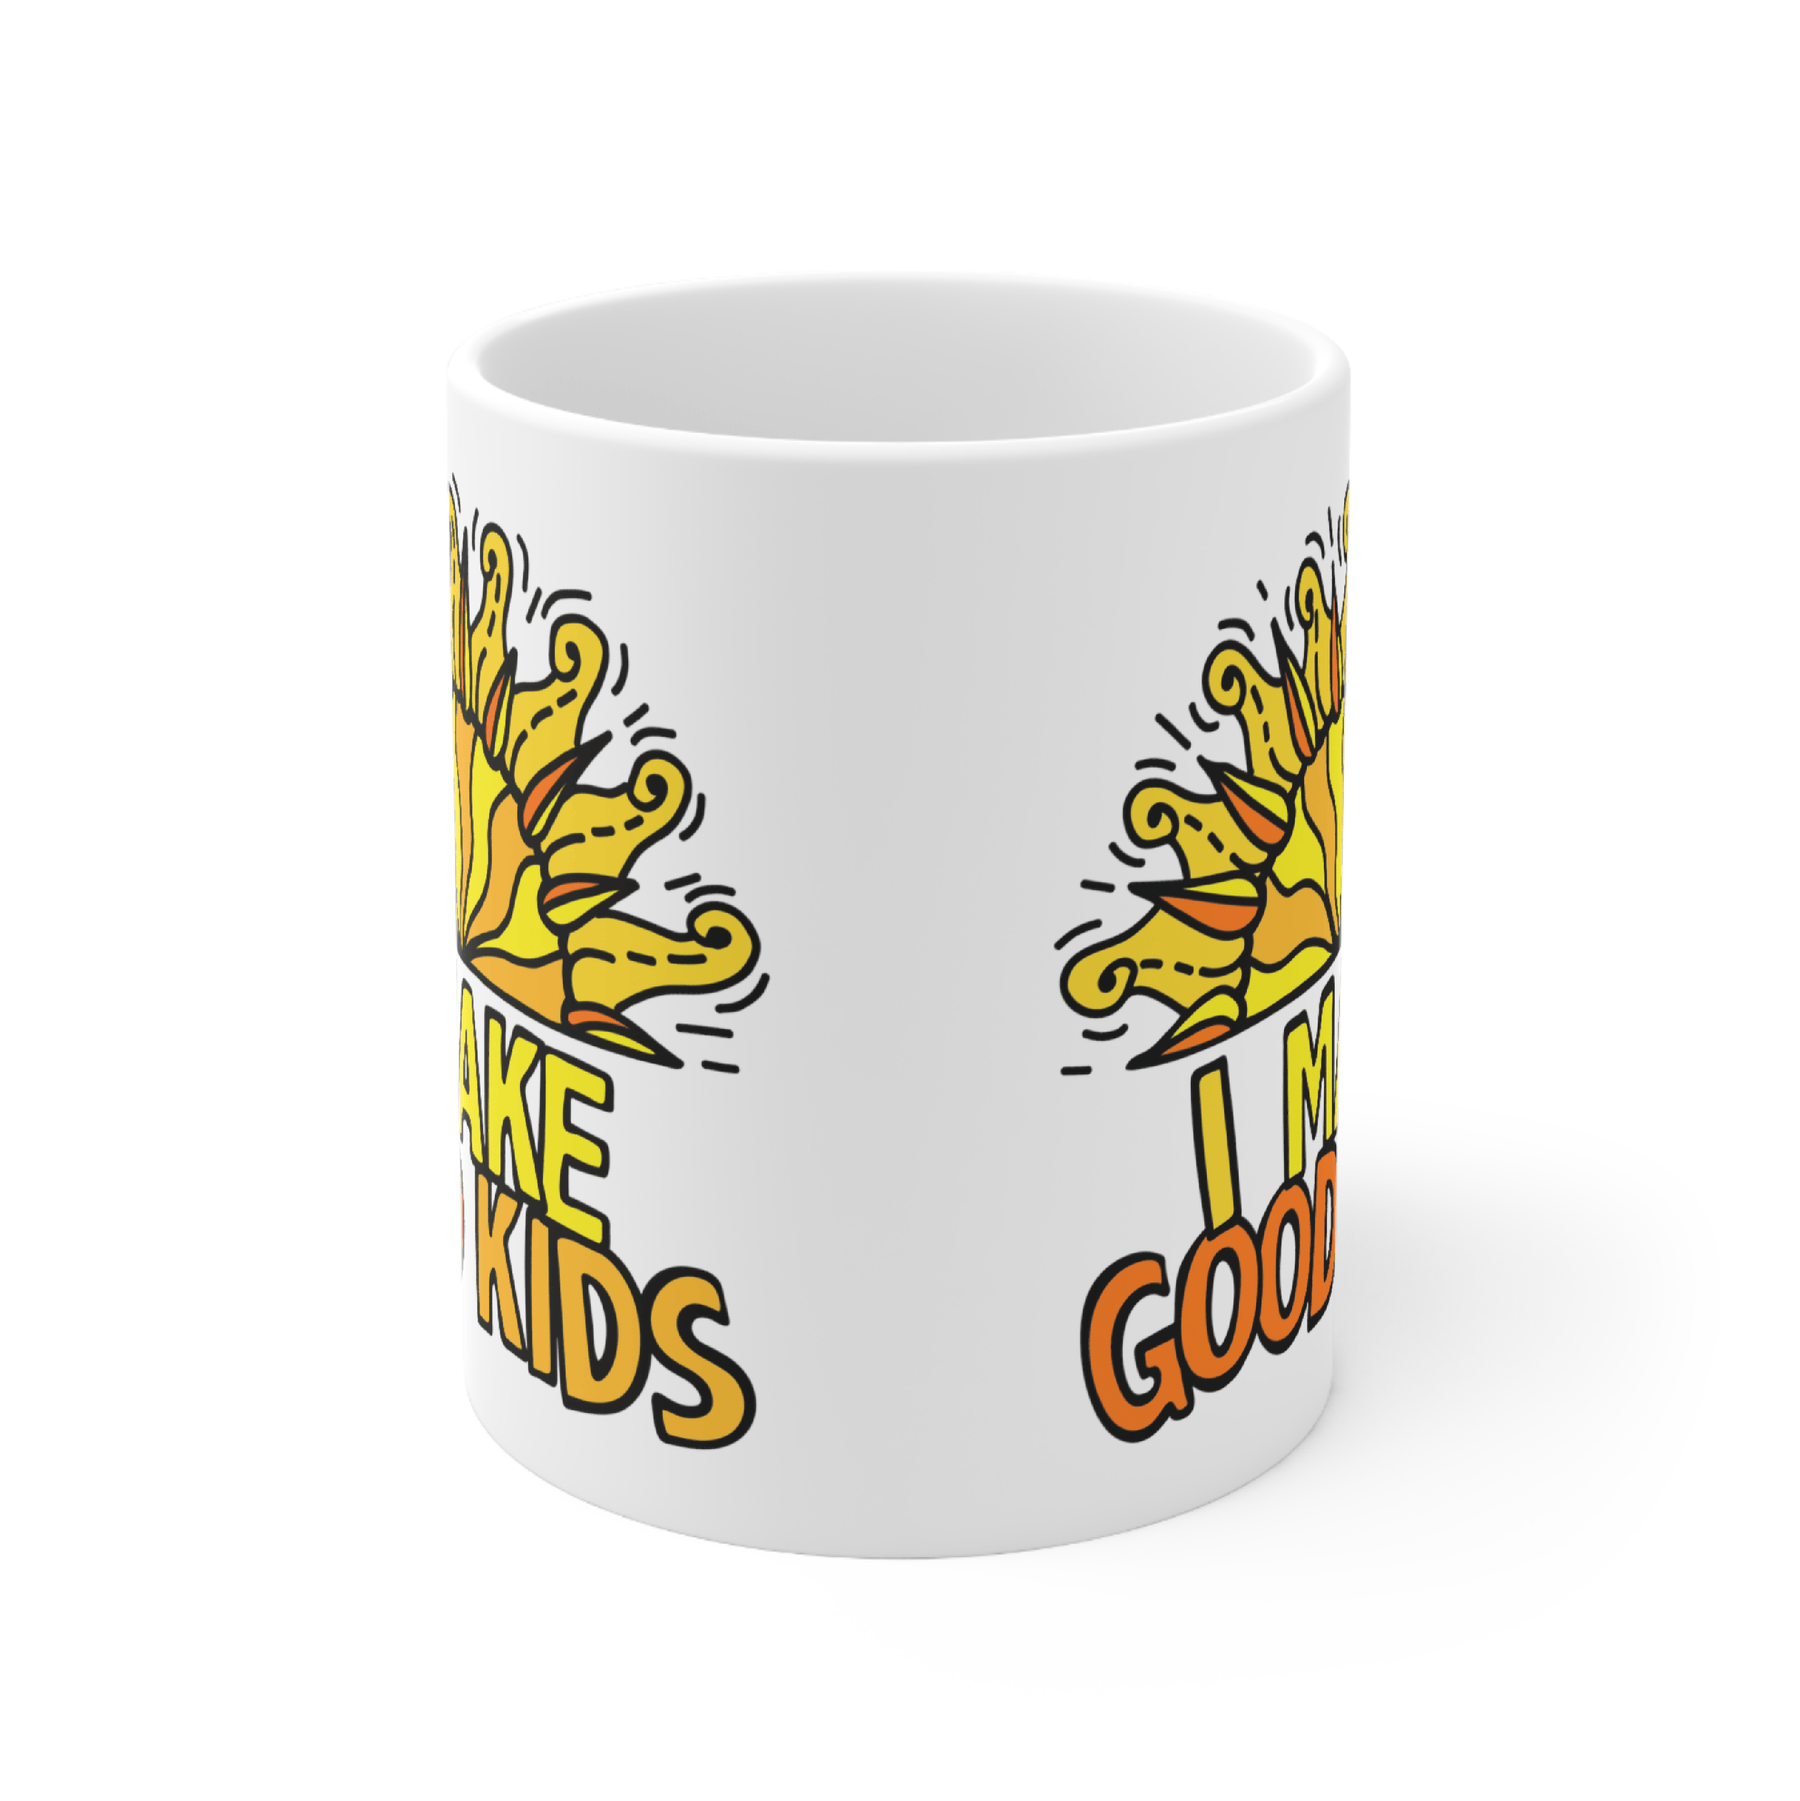 I Make Good Kids 👩‍👧‍👦 - Coffee Mug